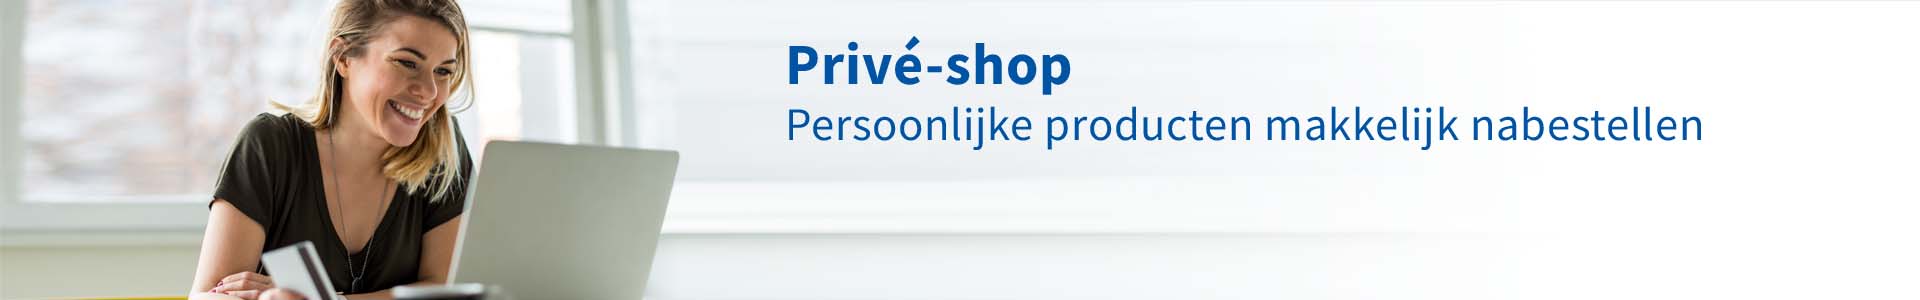 Privé-shop: bestel al uw persoonlijke producten makkelijk na. Ontdek alle voordelen